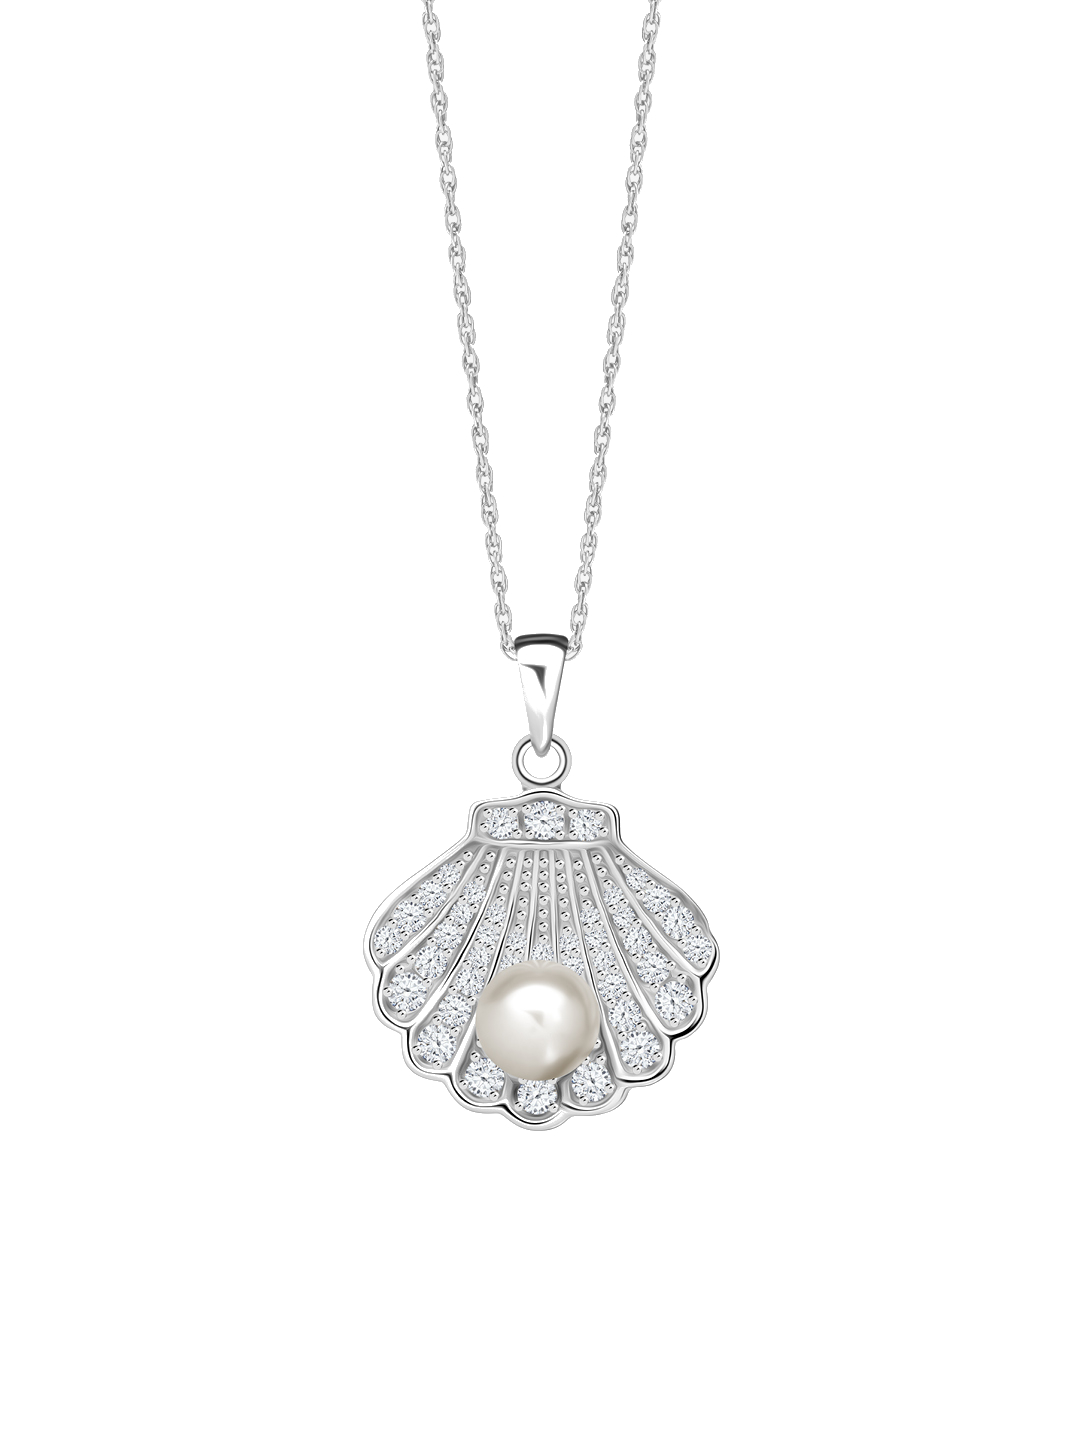 Preciosa Nádherný stříbrný náhrdelník Birth of Venus s říční perlou a kubickou zirkonií Preciosa 5349 00